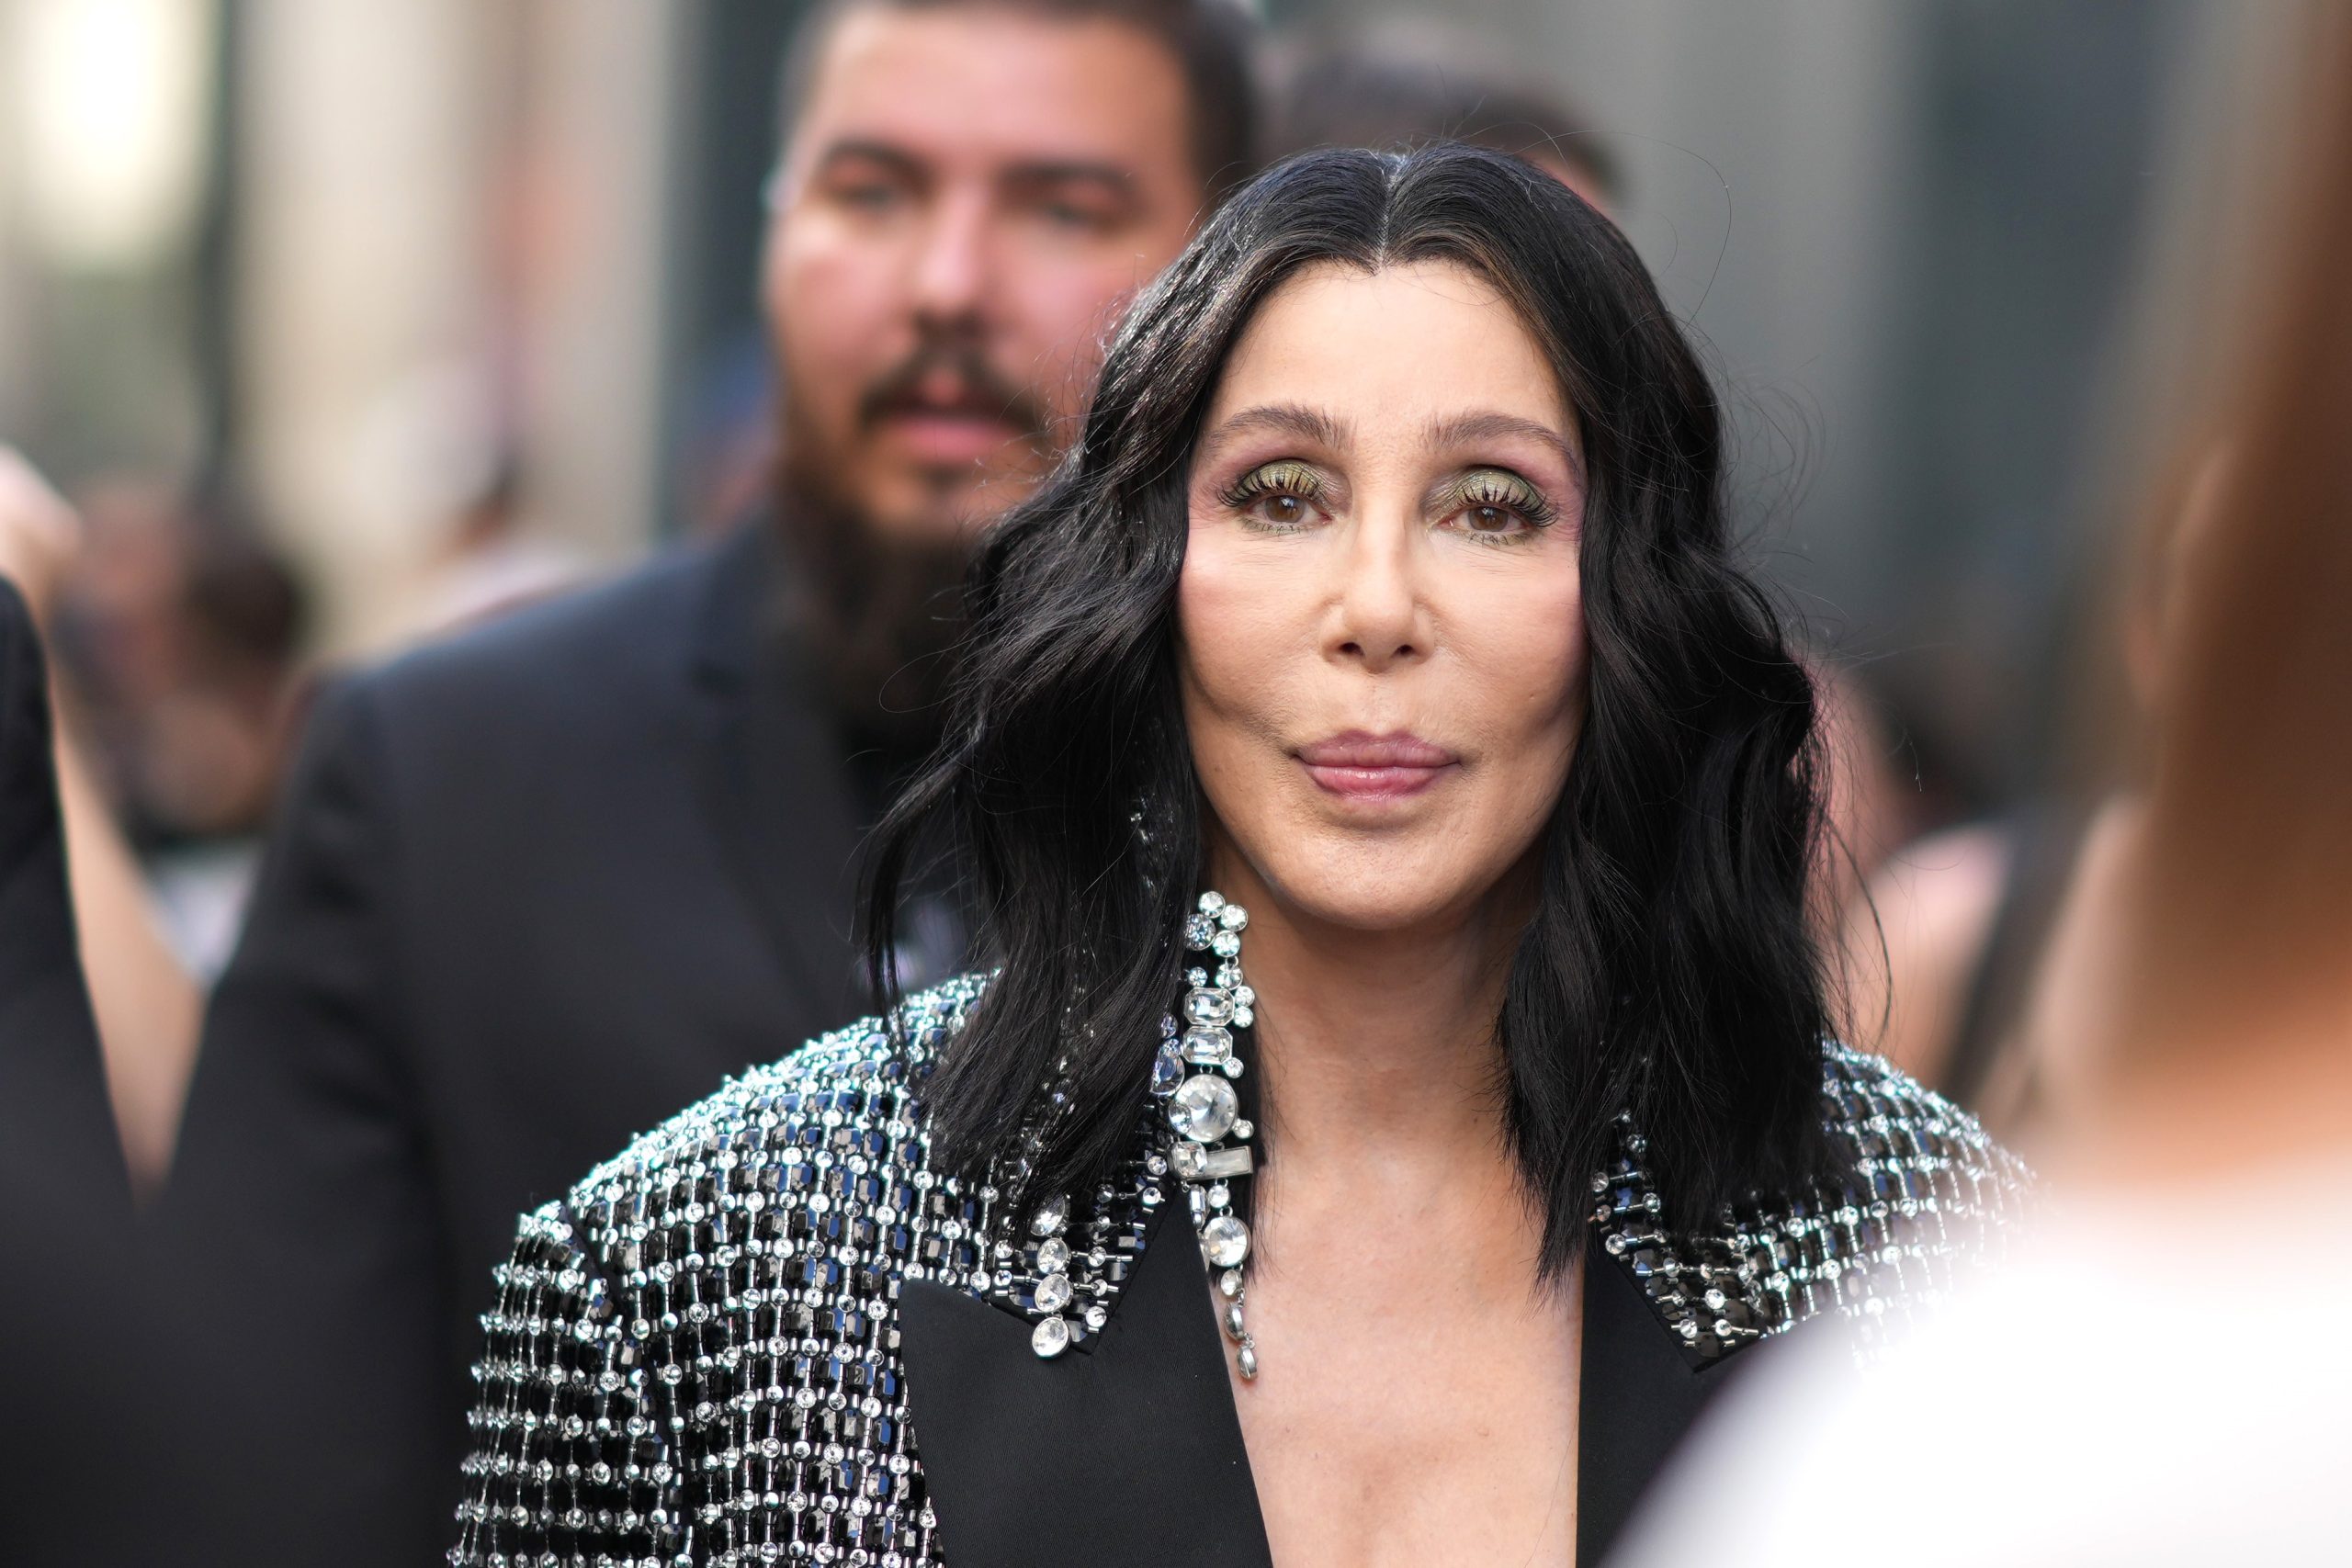 Cher gondnokság alá helyeztetné drogfüggő fiát